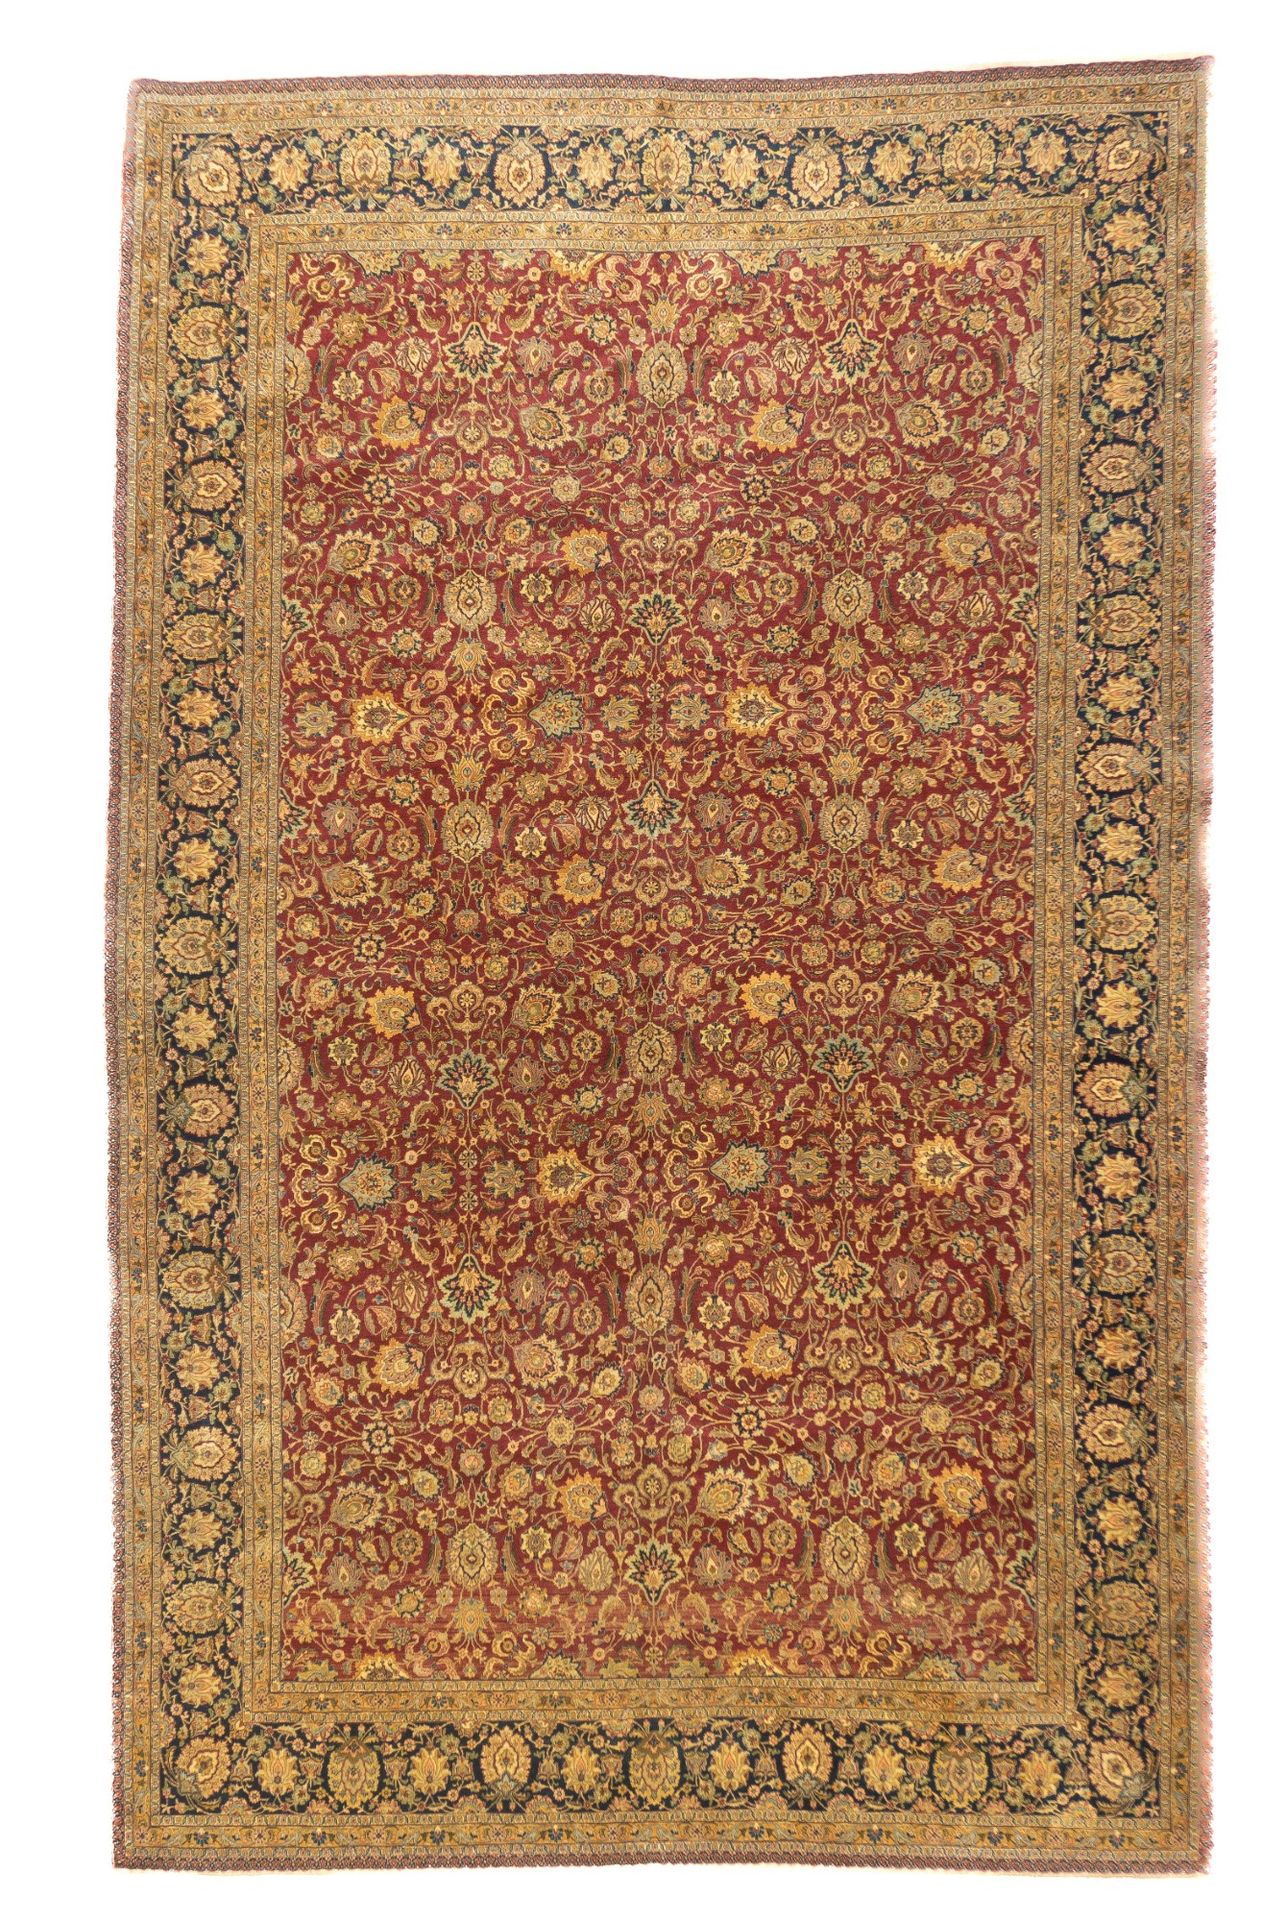 Null Tapis antique Kashan, 6'5" x 10'6" ( 1.96 x 3.20 M )